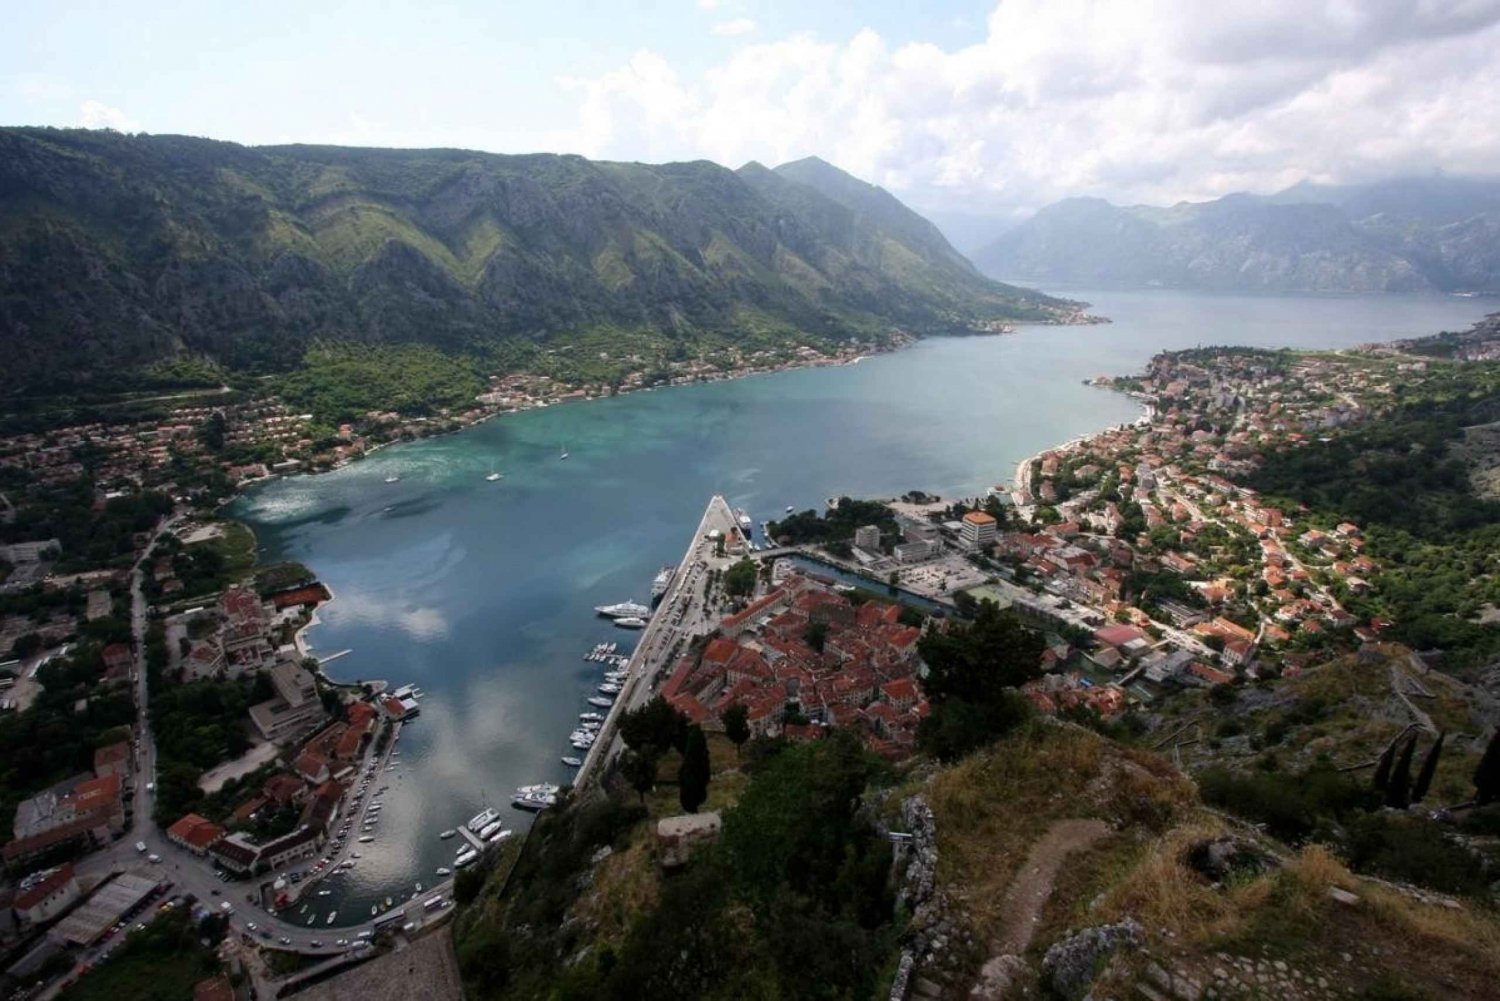 Desde Cavtat Tour de día completo Montenegro Perast, Kotor y Budva